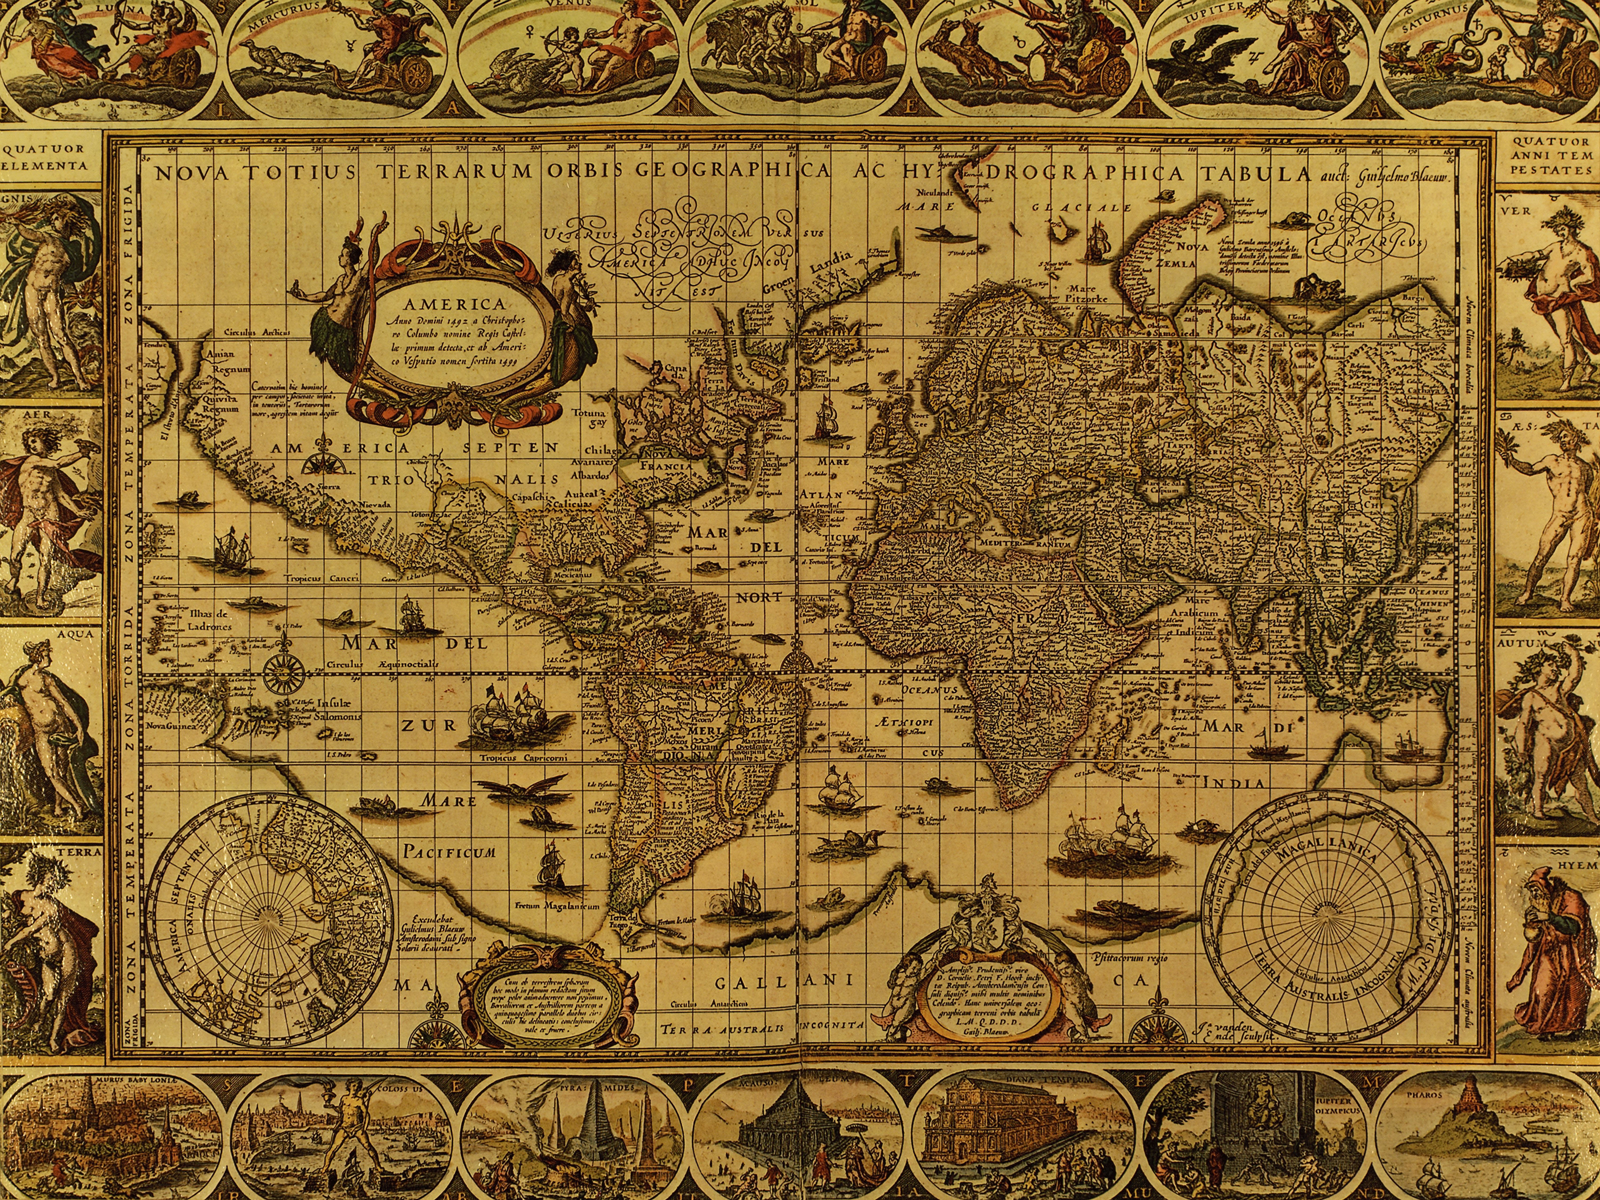 http://2.bp.blogspot.com/_UeKpPmoedmk/TAUB61VvKKI/AAAAAAAAAVk/QRoGuMVjVrY/s1600/Antique+World+Map+Circa+1499+the+long+goodbye.png